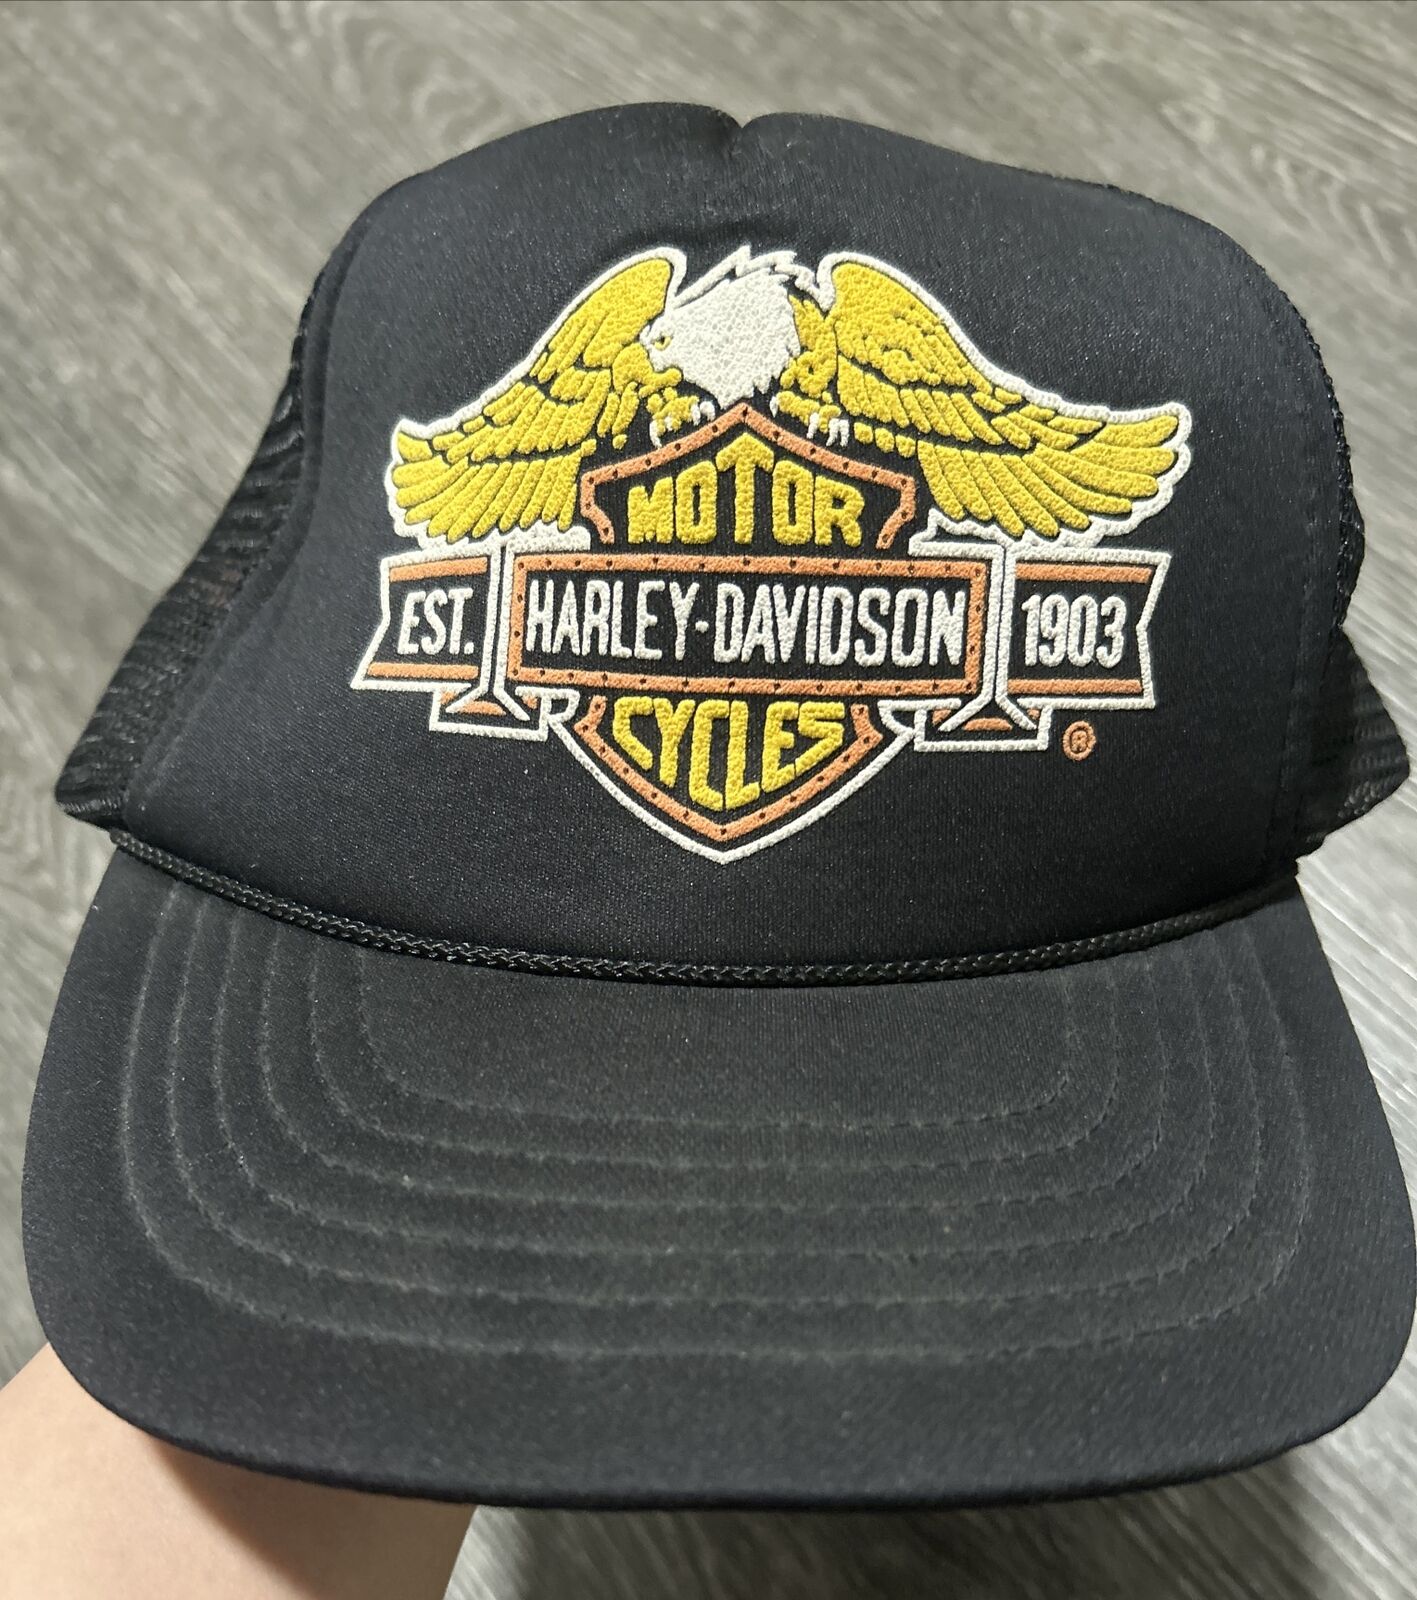 RARE Vintage Harley Davidson Hat SnapBack Mesh Trucker Black (still lights Up)